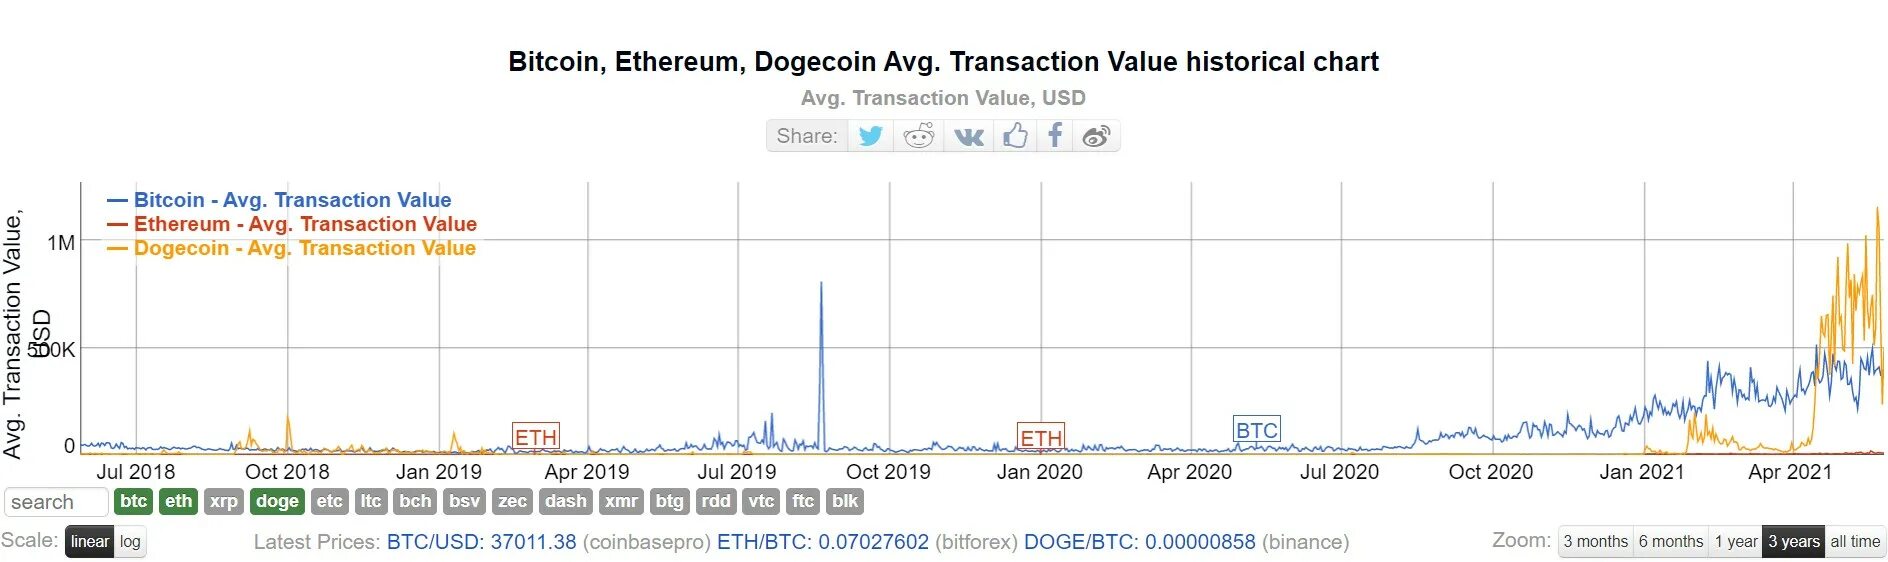 Скорость транзакций. Bitcoin Ethereum Dogecoin. Dogecoin новости сегодня. Сложность сети догикоин. Скорость транзакции